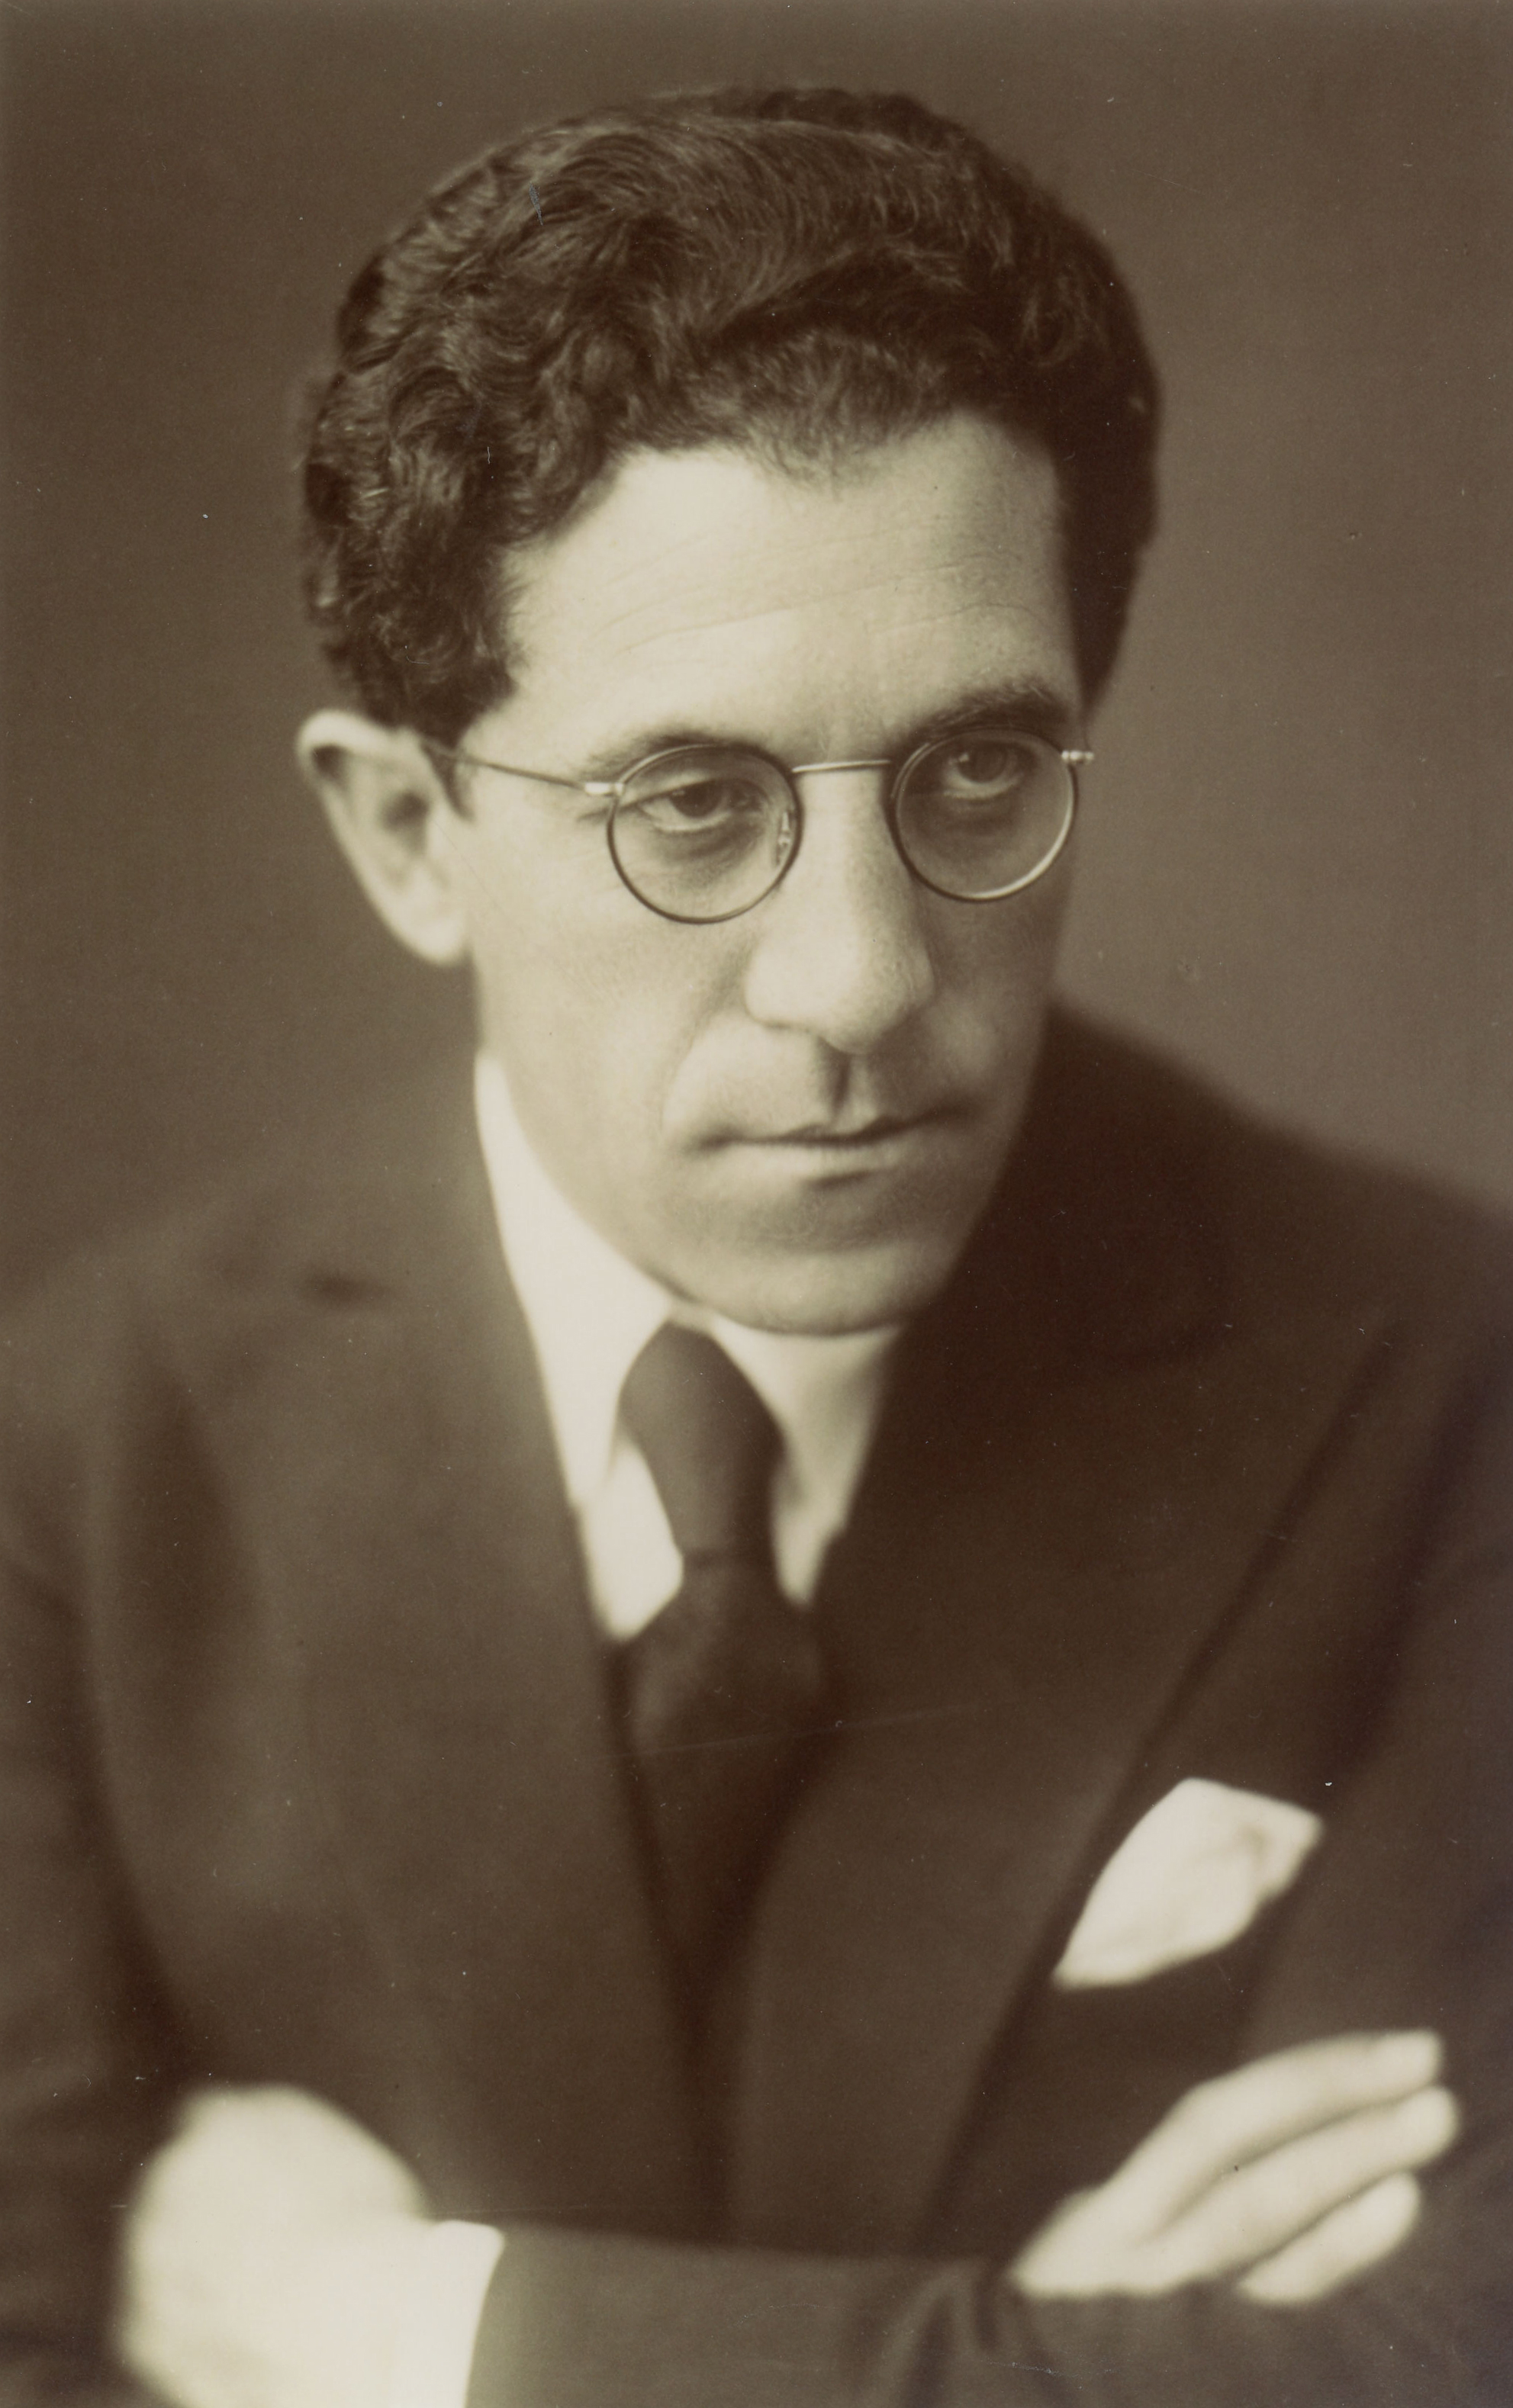 Antonio TUSA dans les années 1930, une photo citée de la page https://www.winterthur-glossar.ch/antonio-tusa